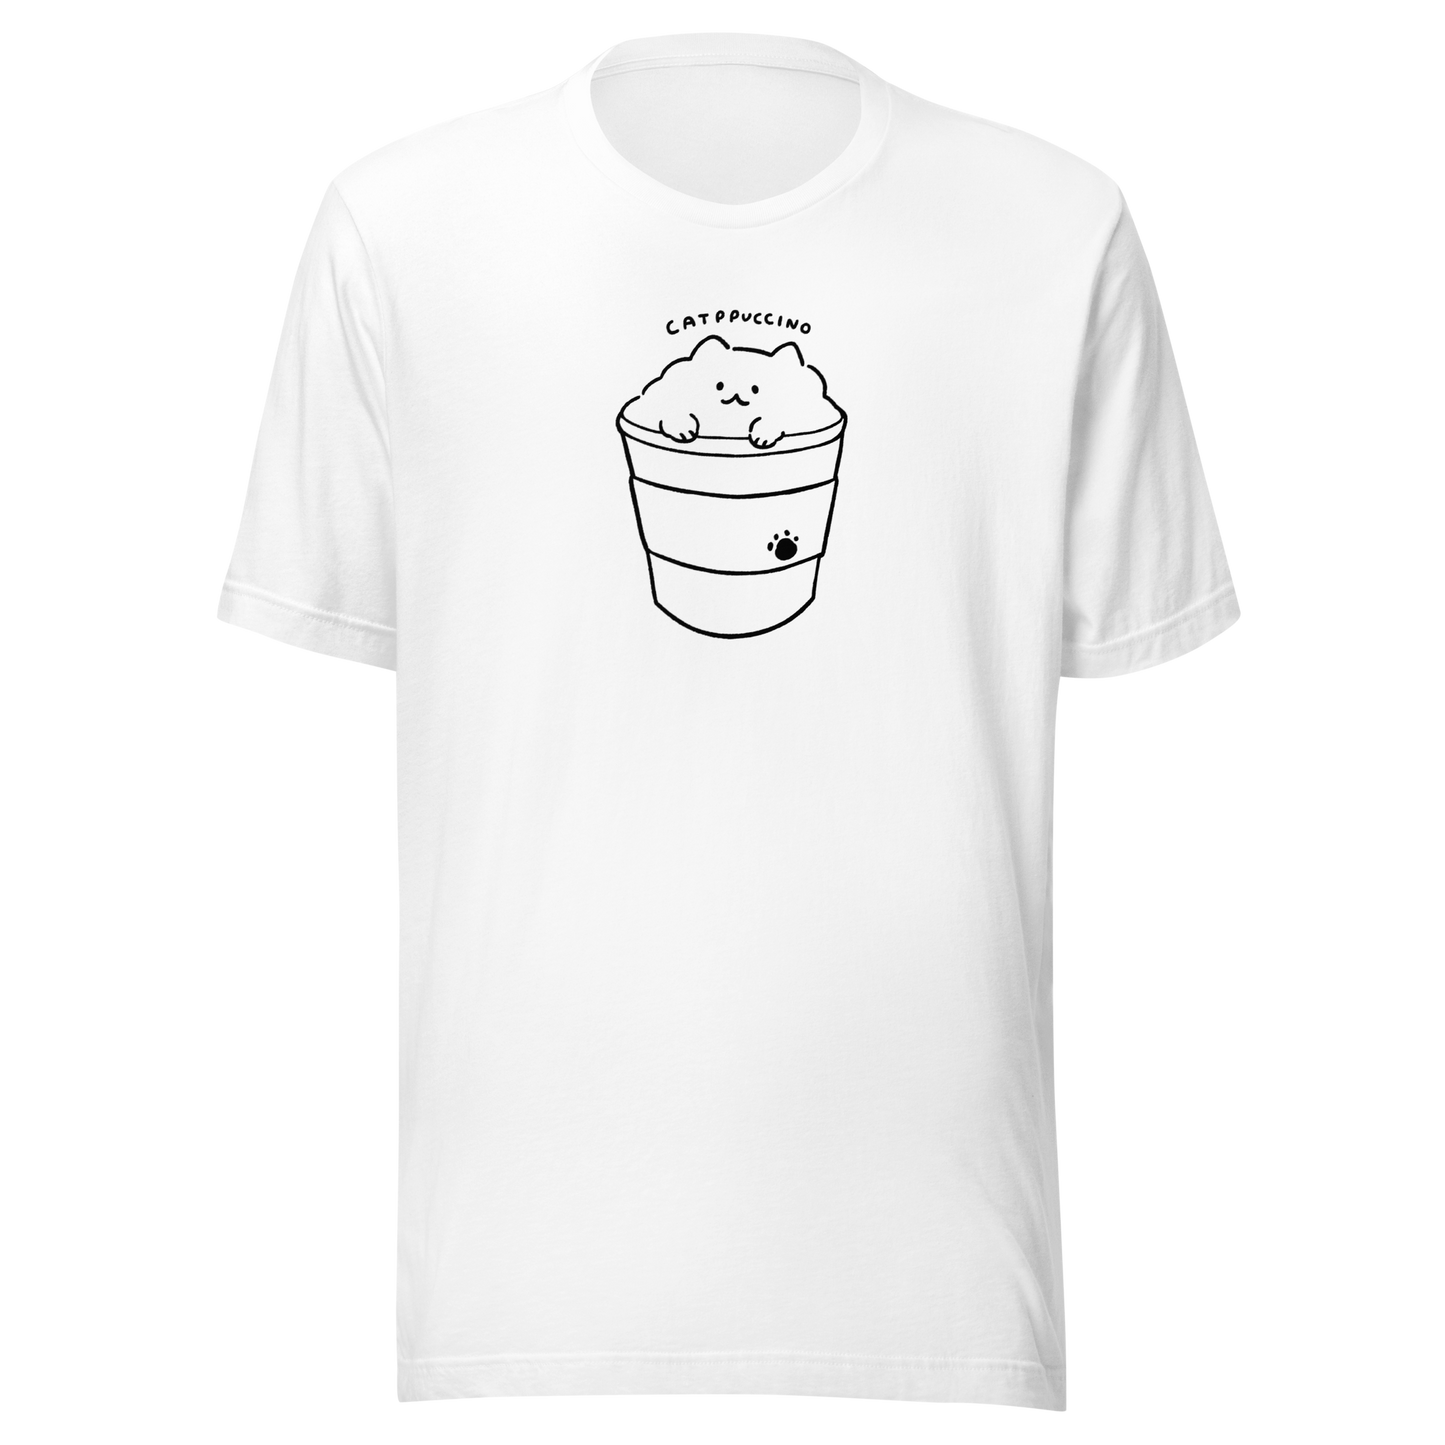 Catpuccino Women's T-shirt